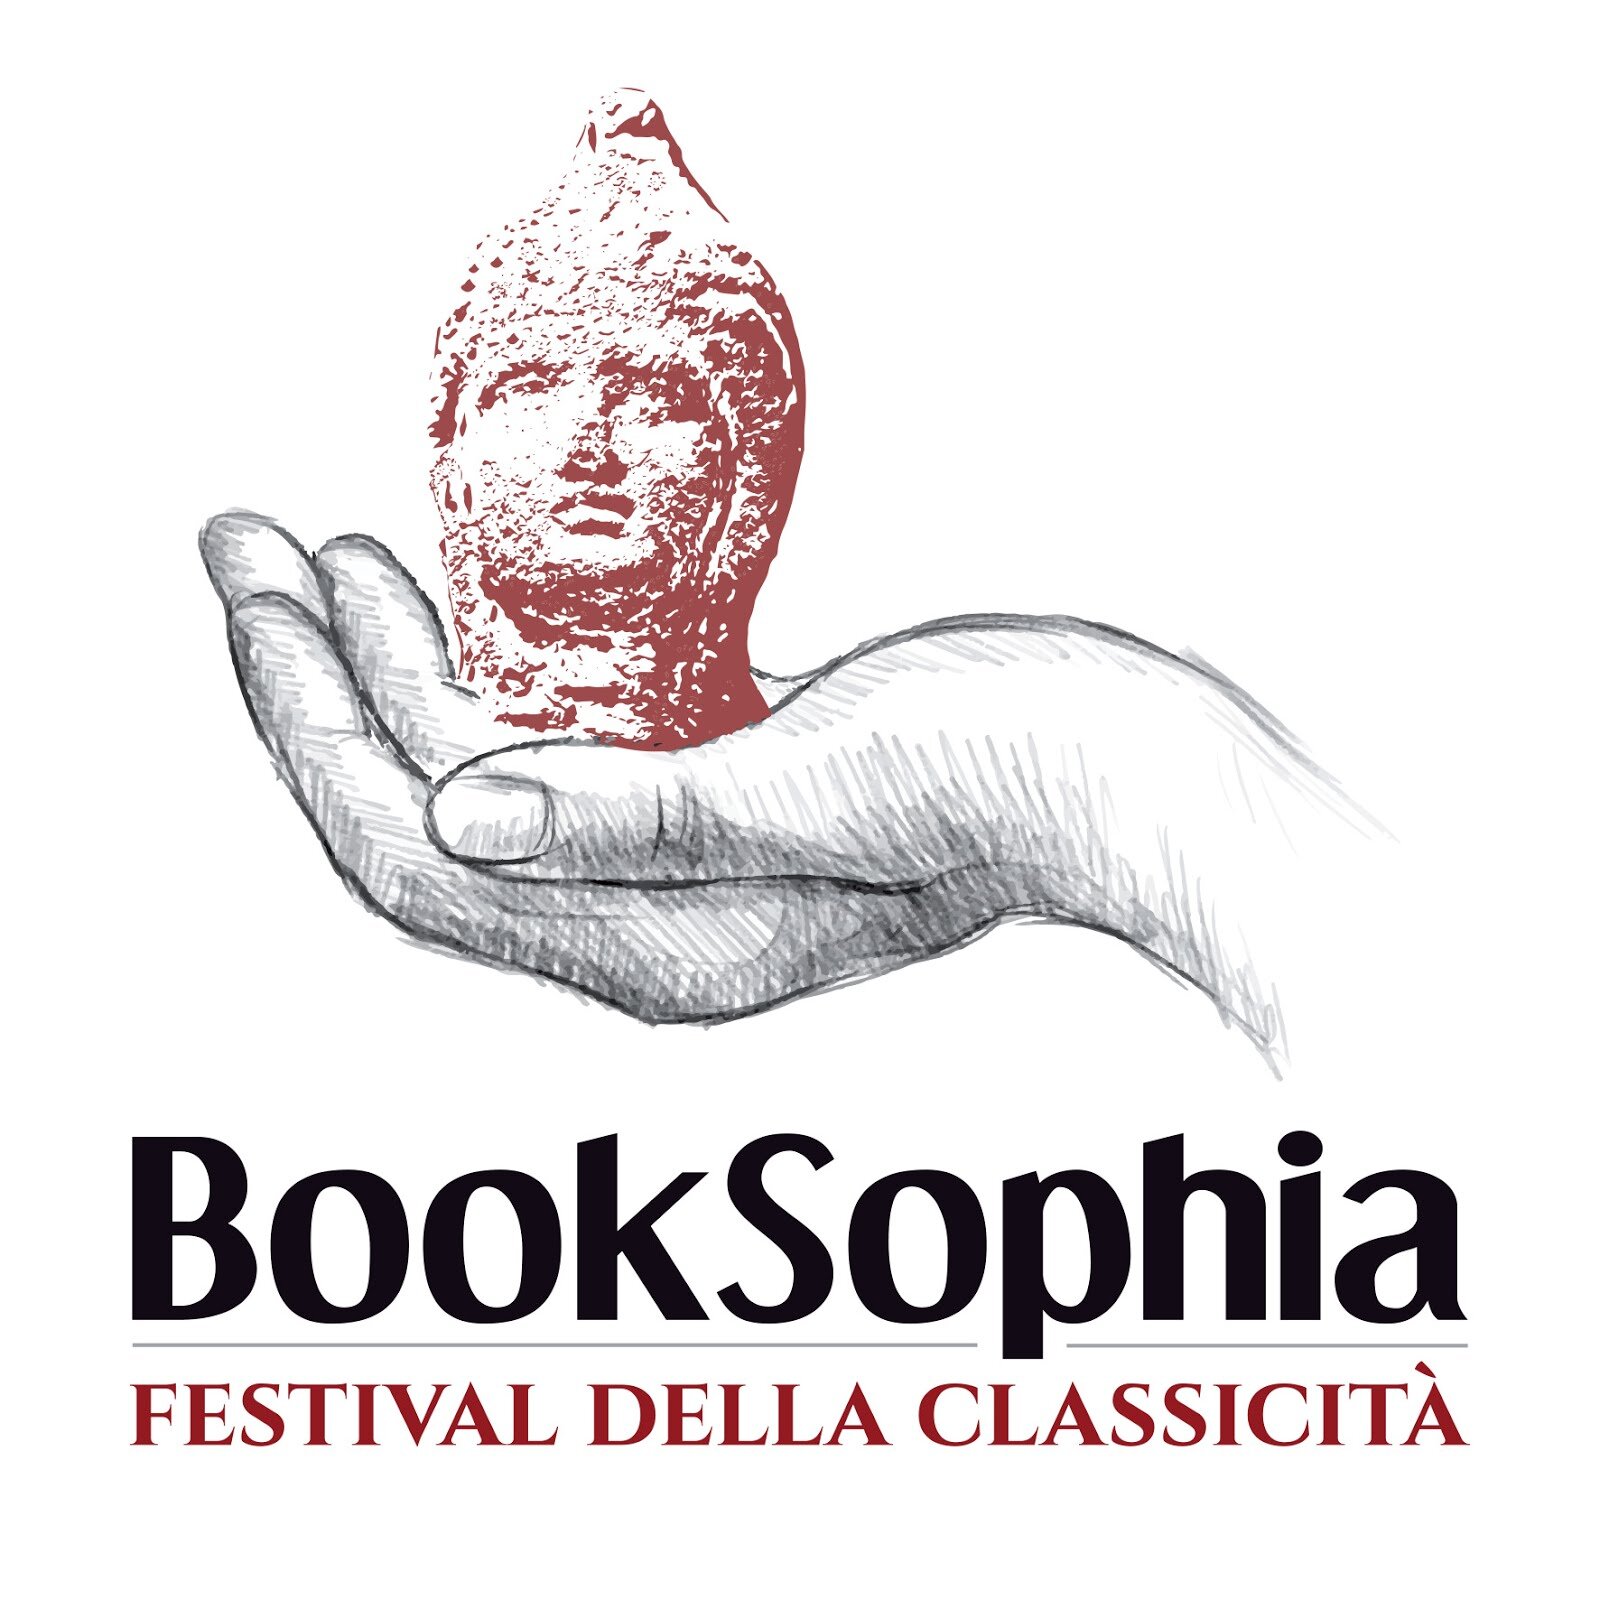 BookSophia, il primo festival della classicità a Massa Lubrense